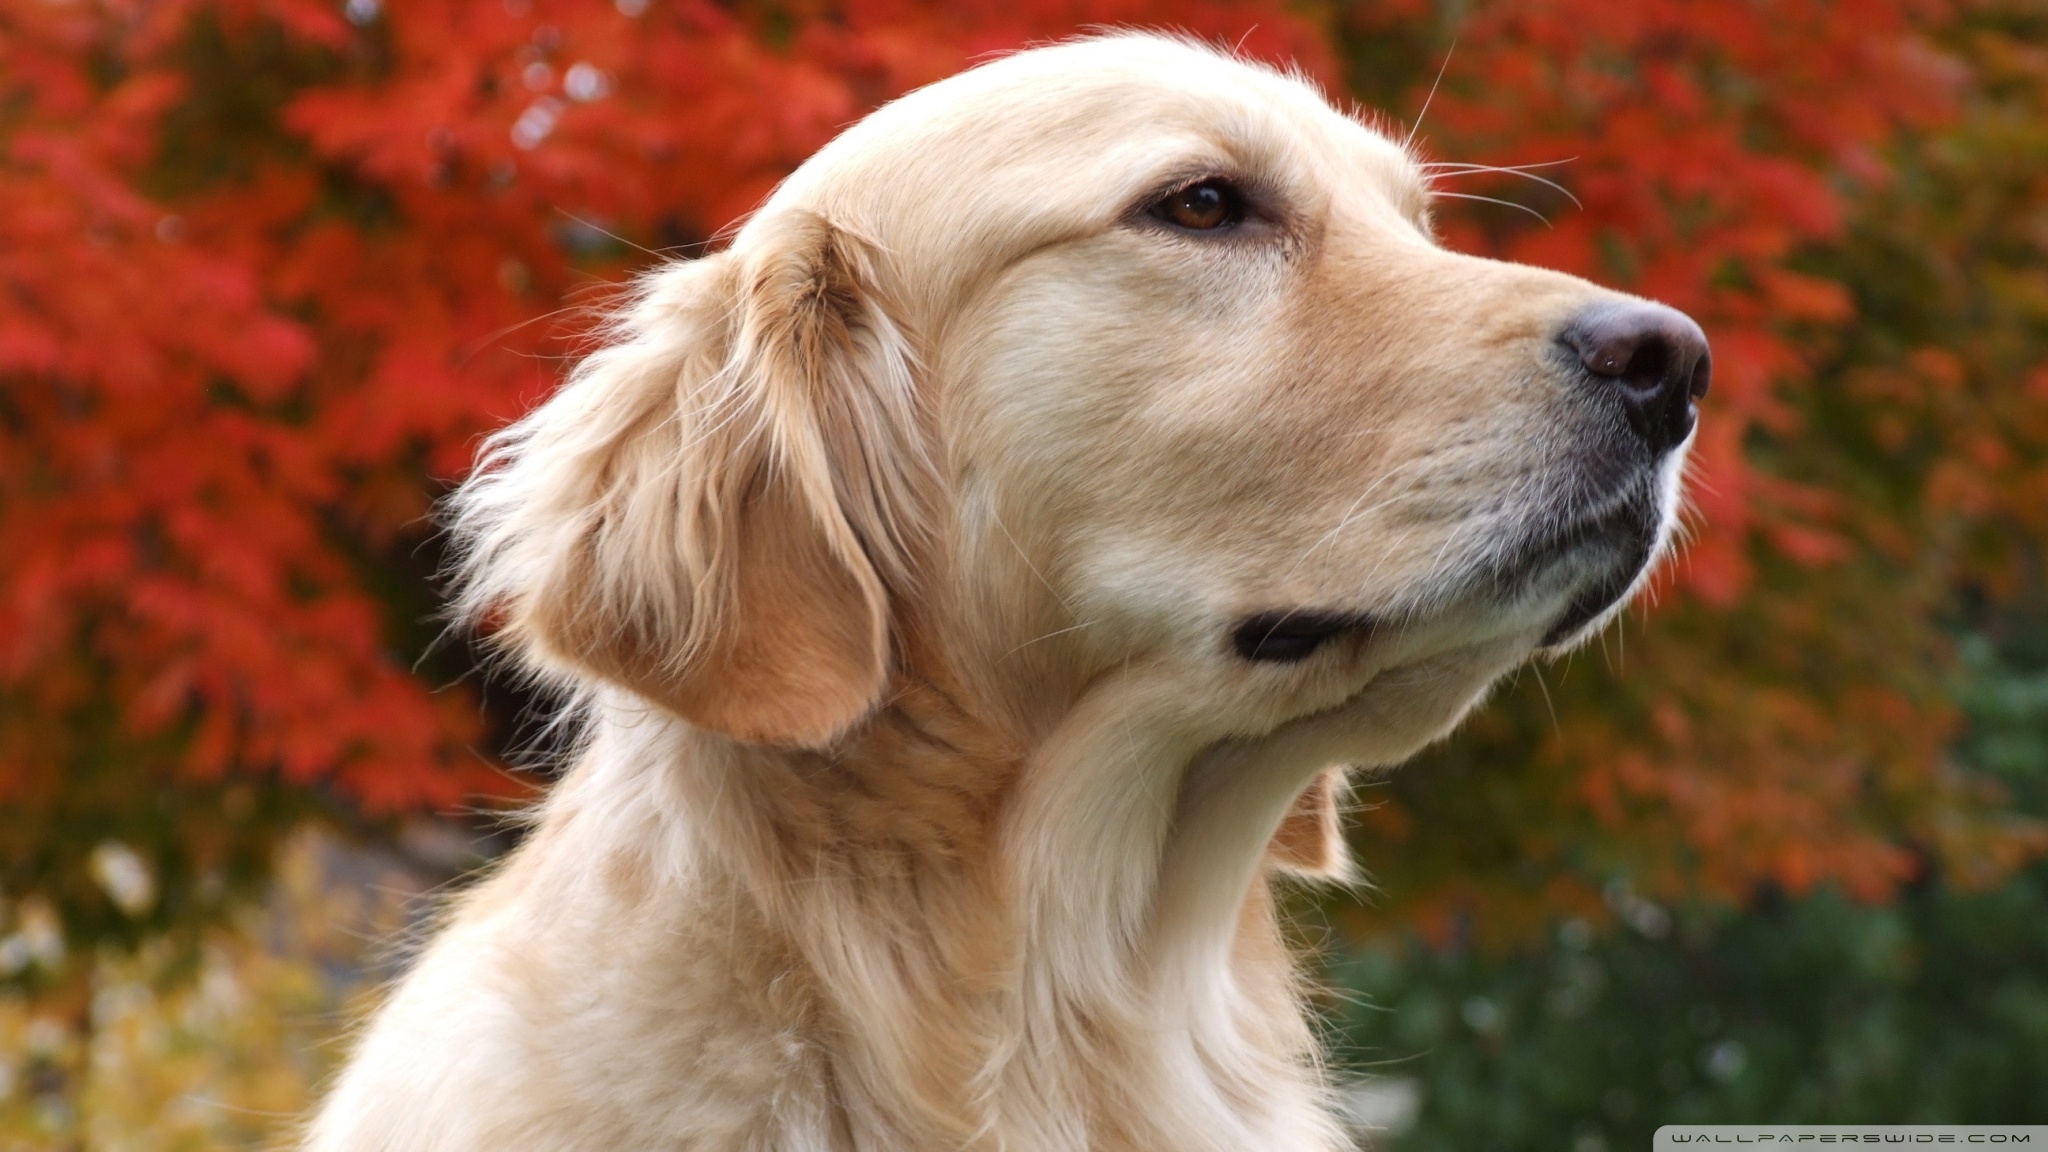 Get adopt a golden retriever puppy in maryland